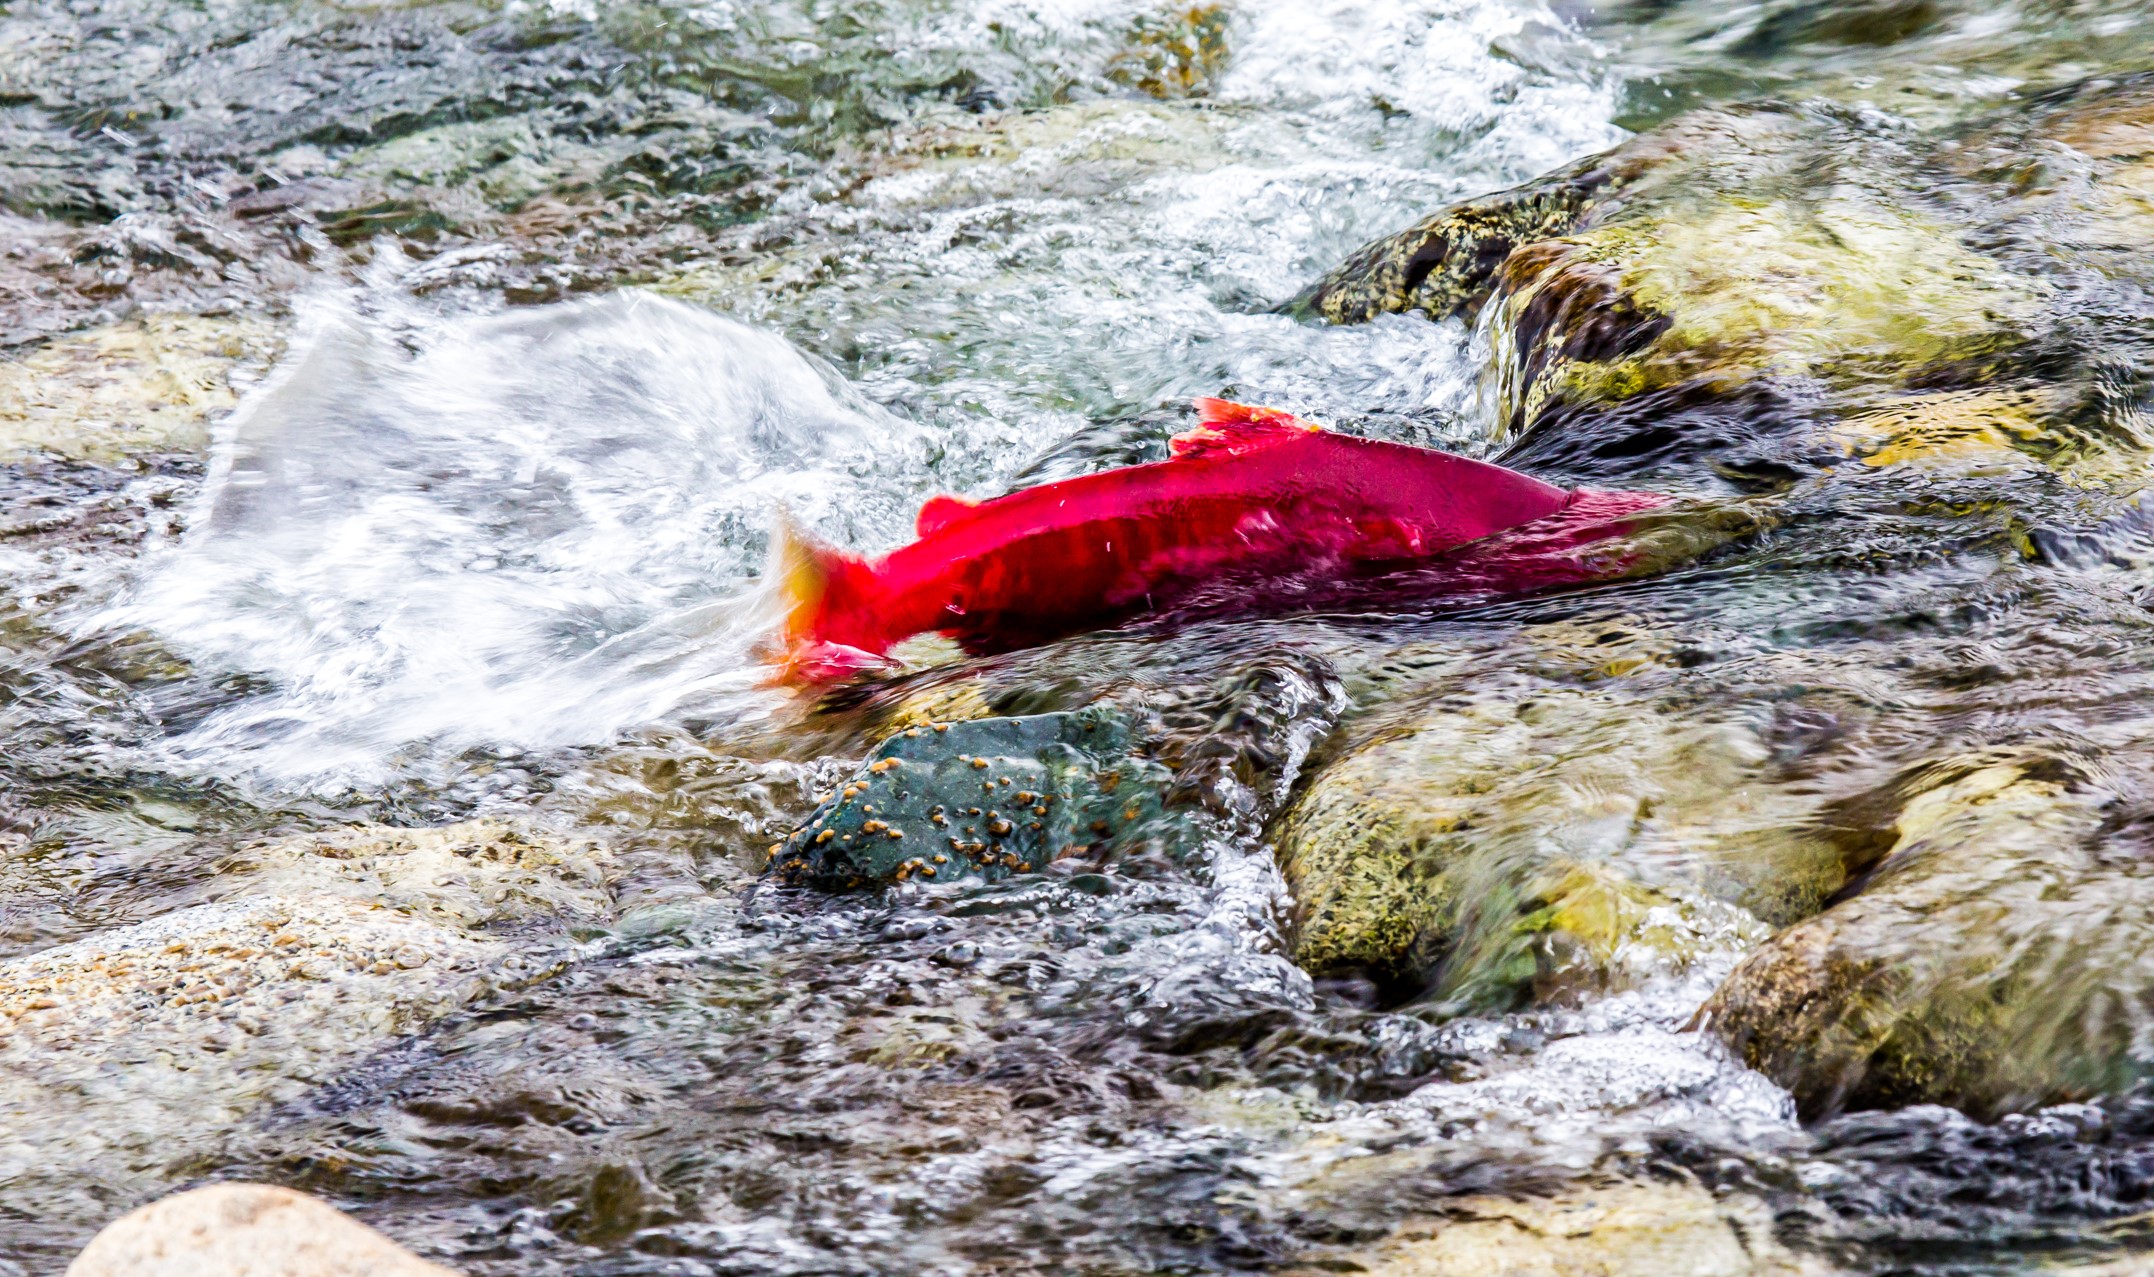 Salmon run upstream